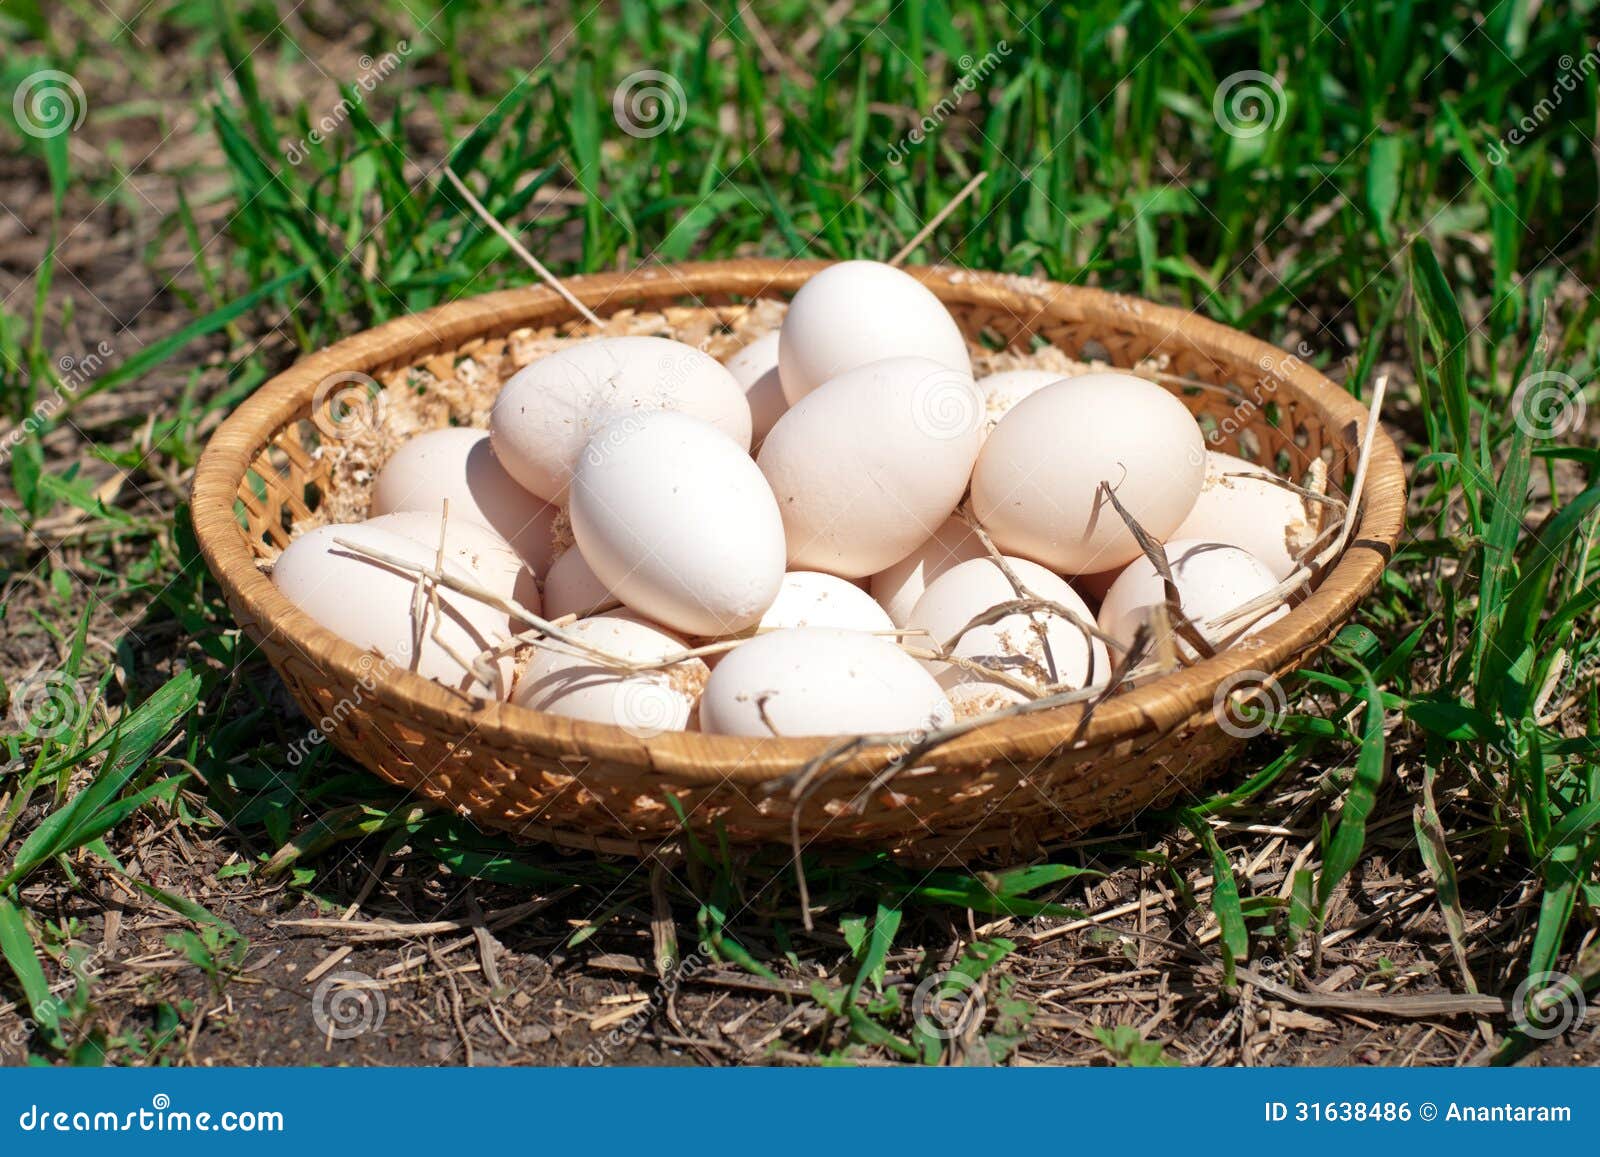 Fresh chicken eggs in a basket on a summer farm.